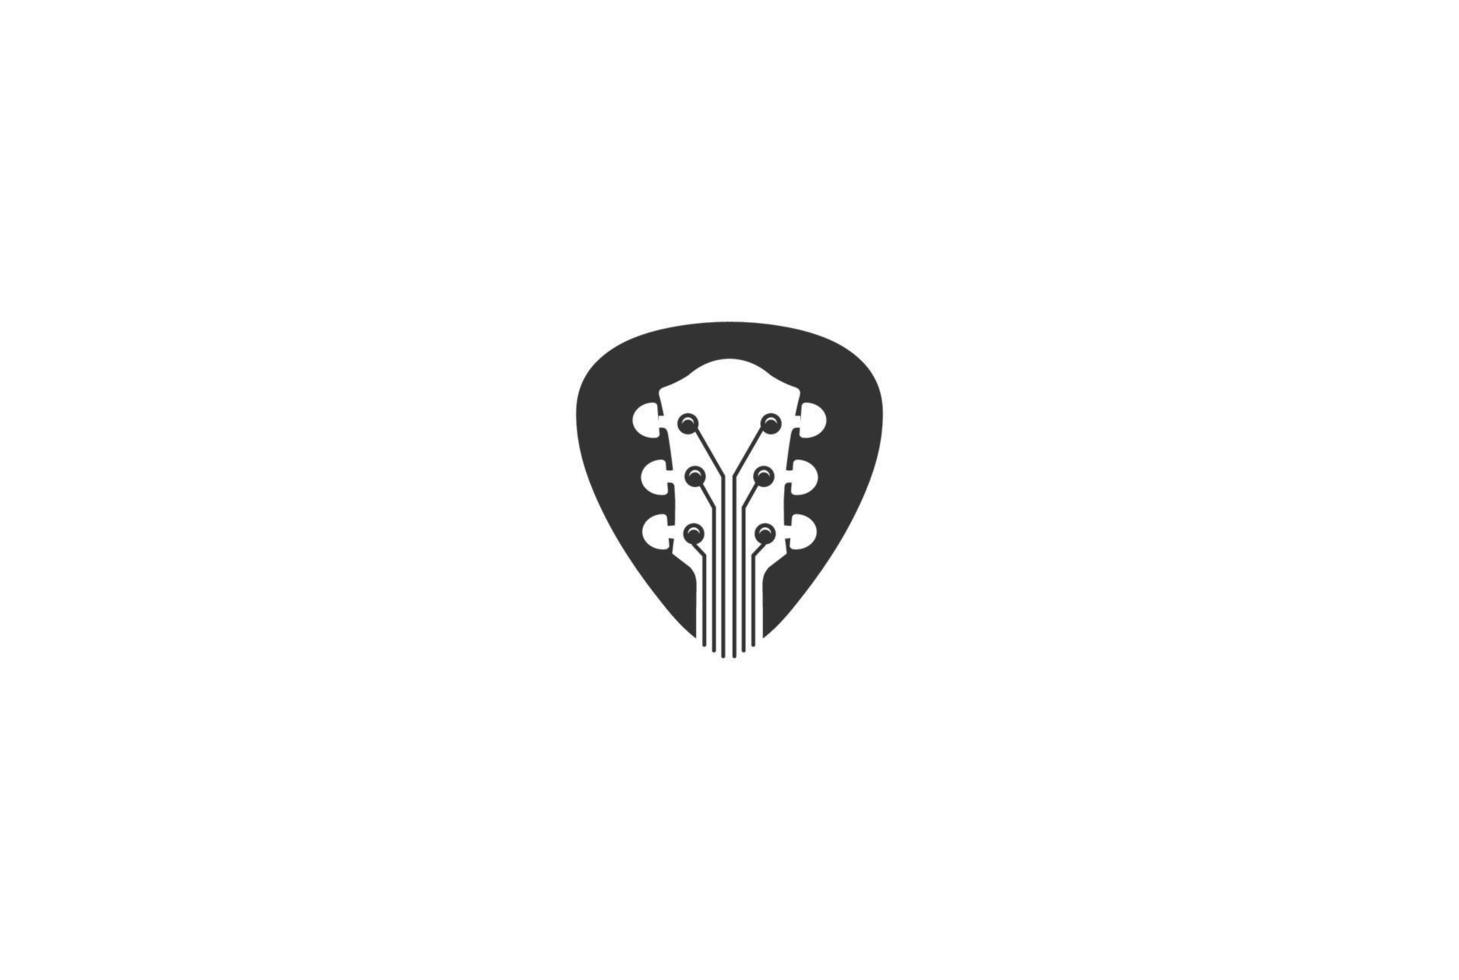 púa de guitarra minimalista simple para vector de diseño de logotipo de música